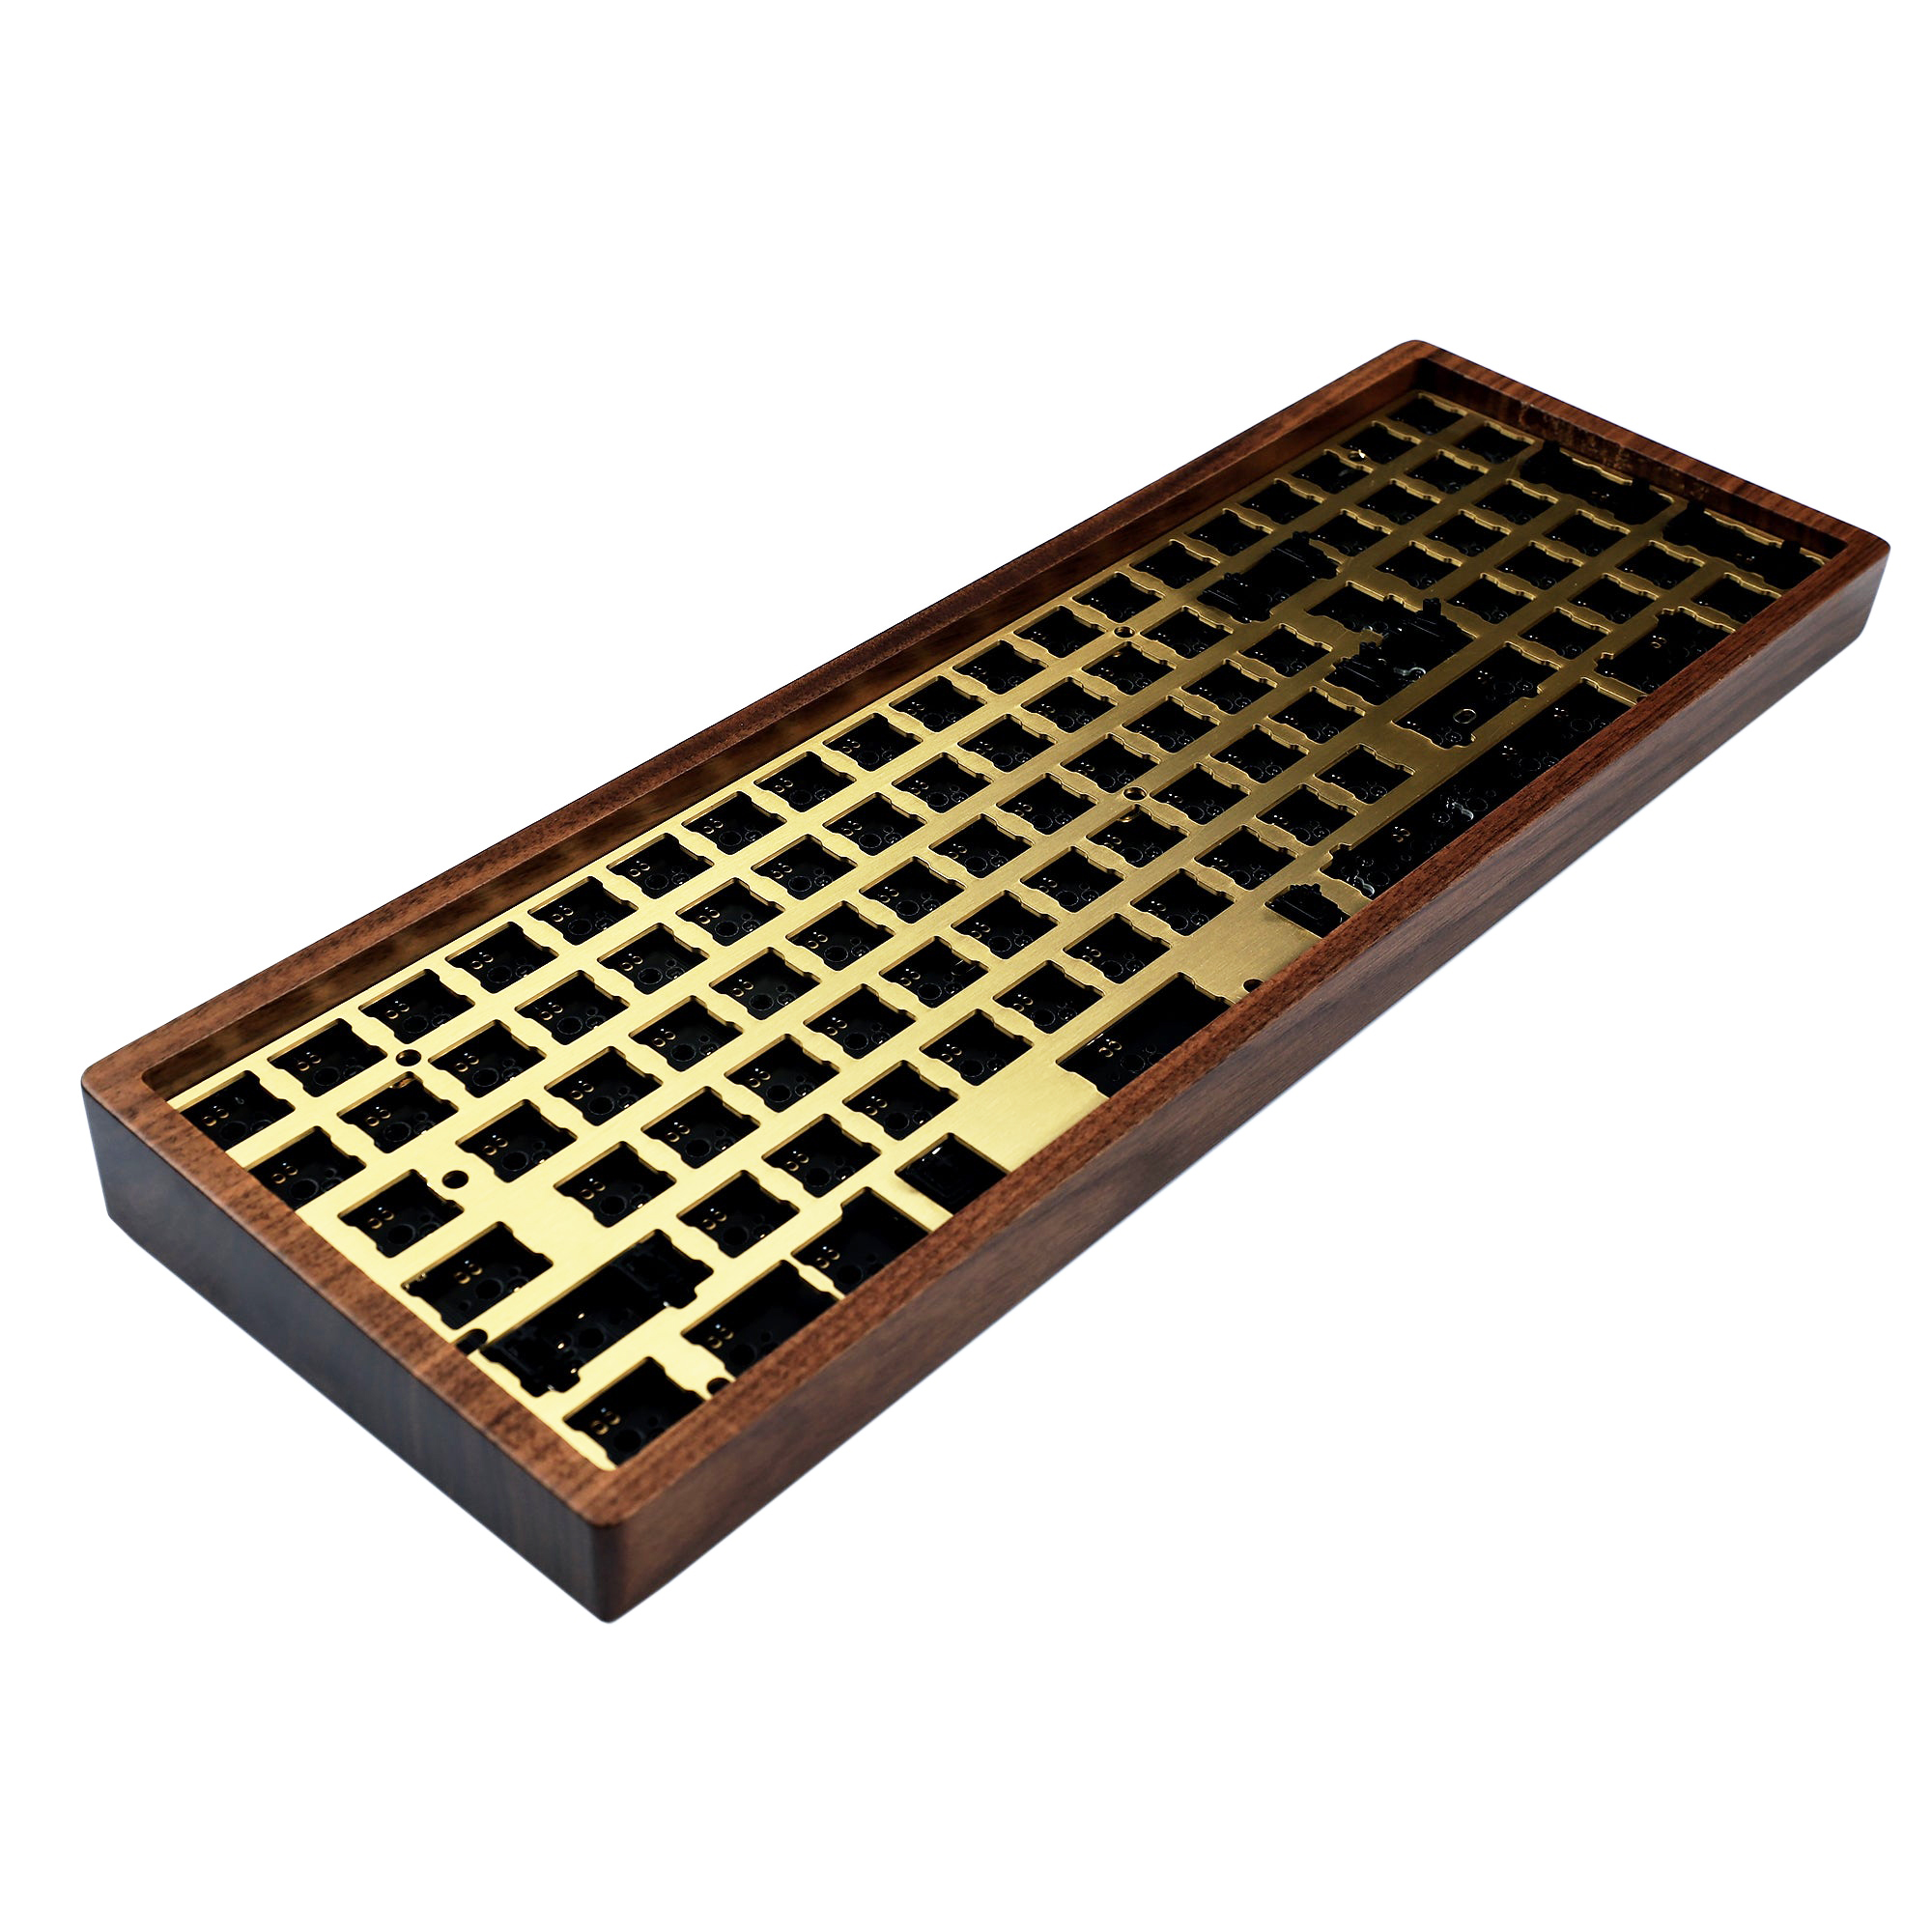 96木製ケースホットスワップキーボード| QMK UnderGlow RGB ANSI ISO PCB ALU PLATE BEECH WALNUT WOOD | MXメカニカルキーボード用